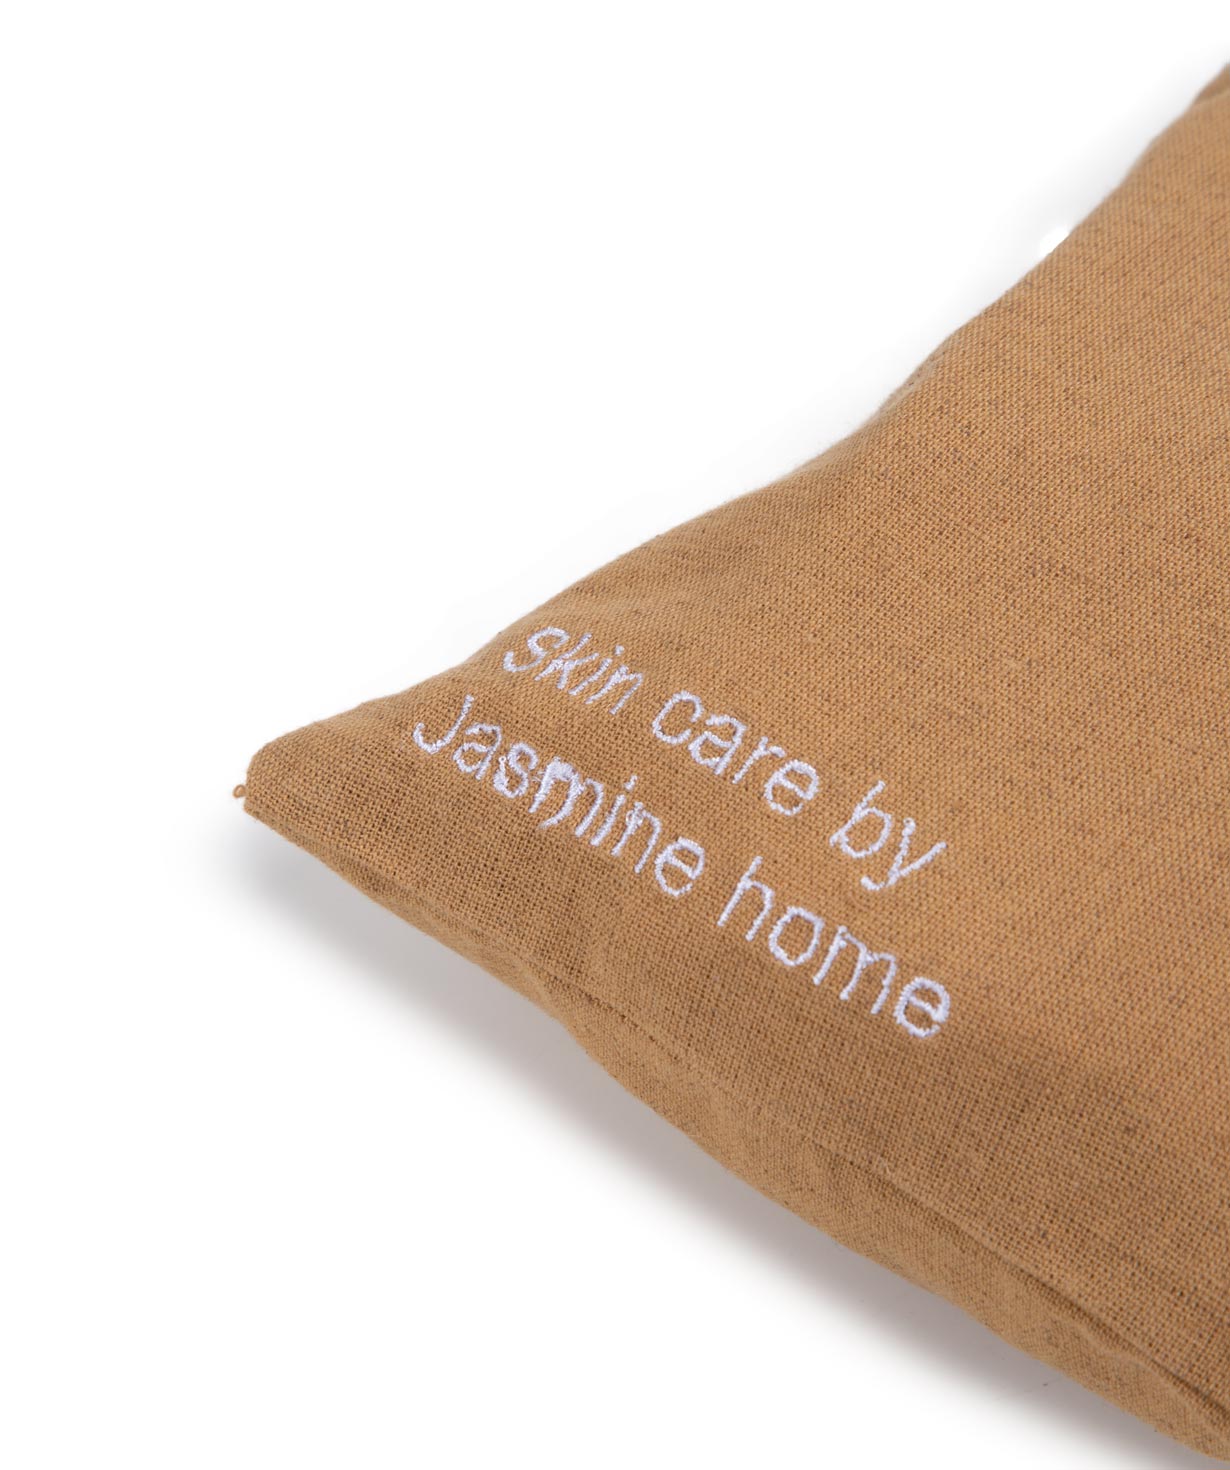 Набор для ухода «Jasmine Home» Skin Care №3